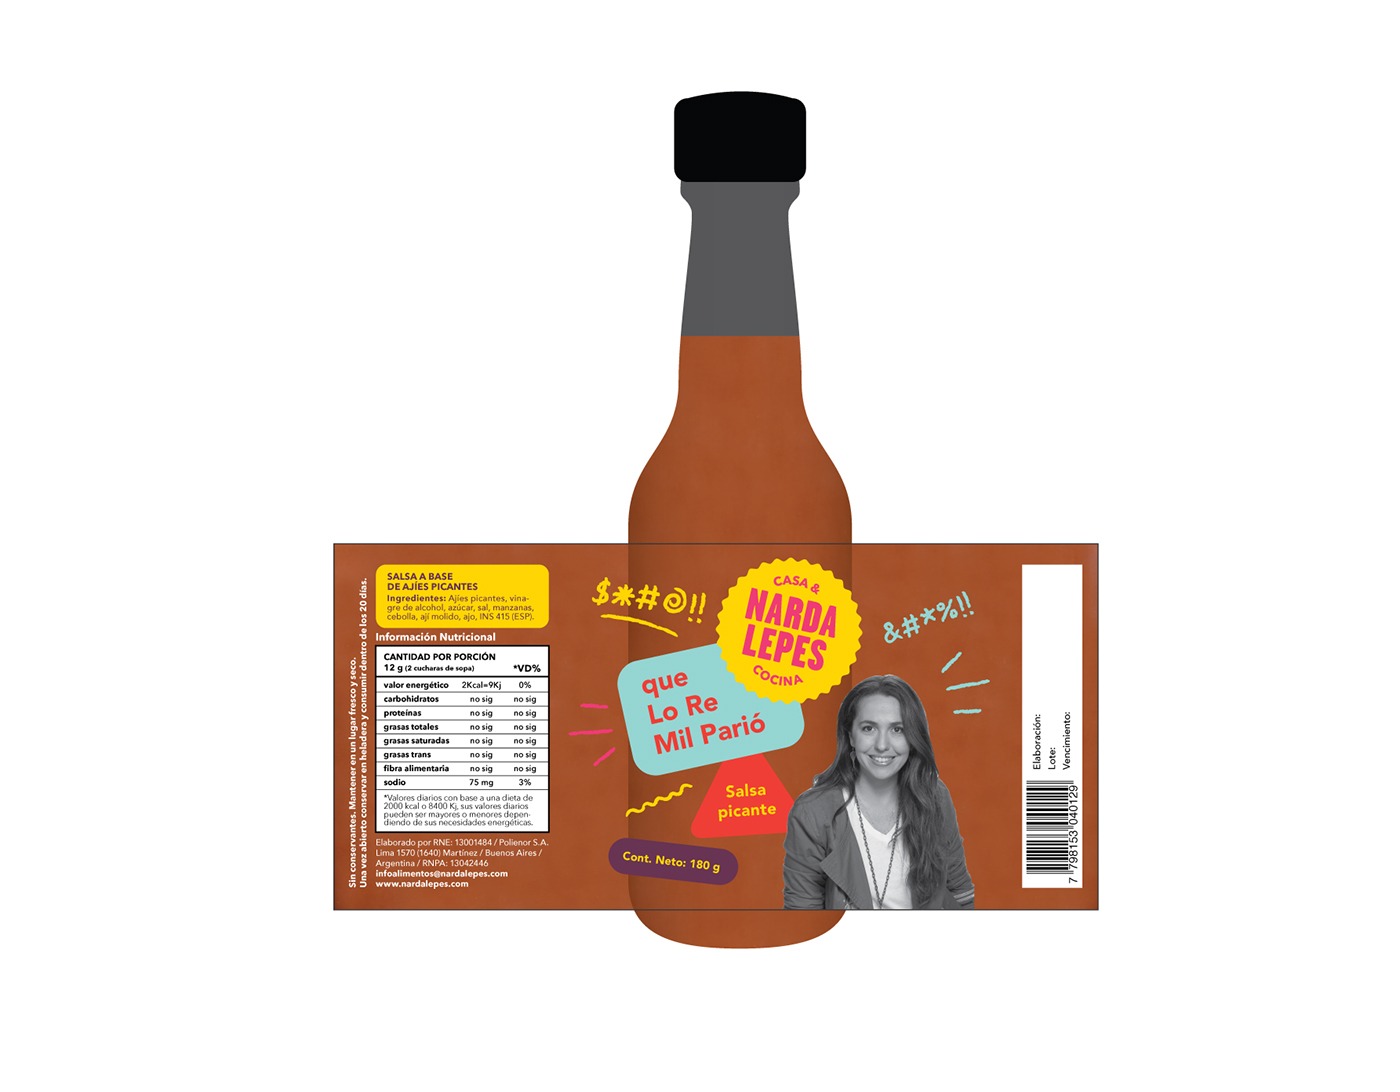 narda lepes casa & cocina home & kitchen conservas preserves argentina cocinera cook sauces salsas jars frascos stickers etiquetas